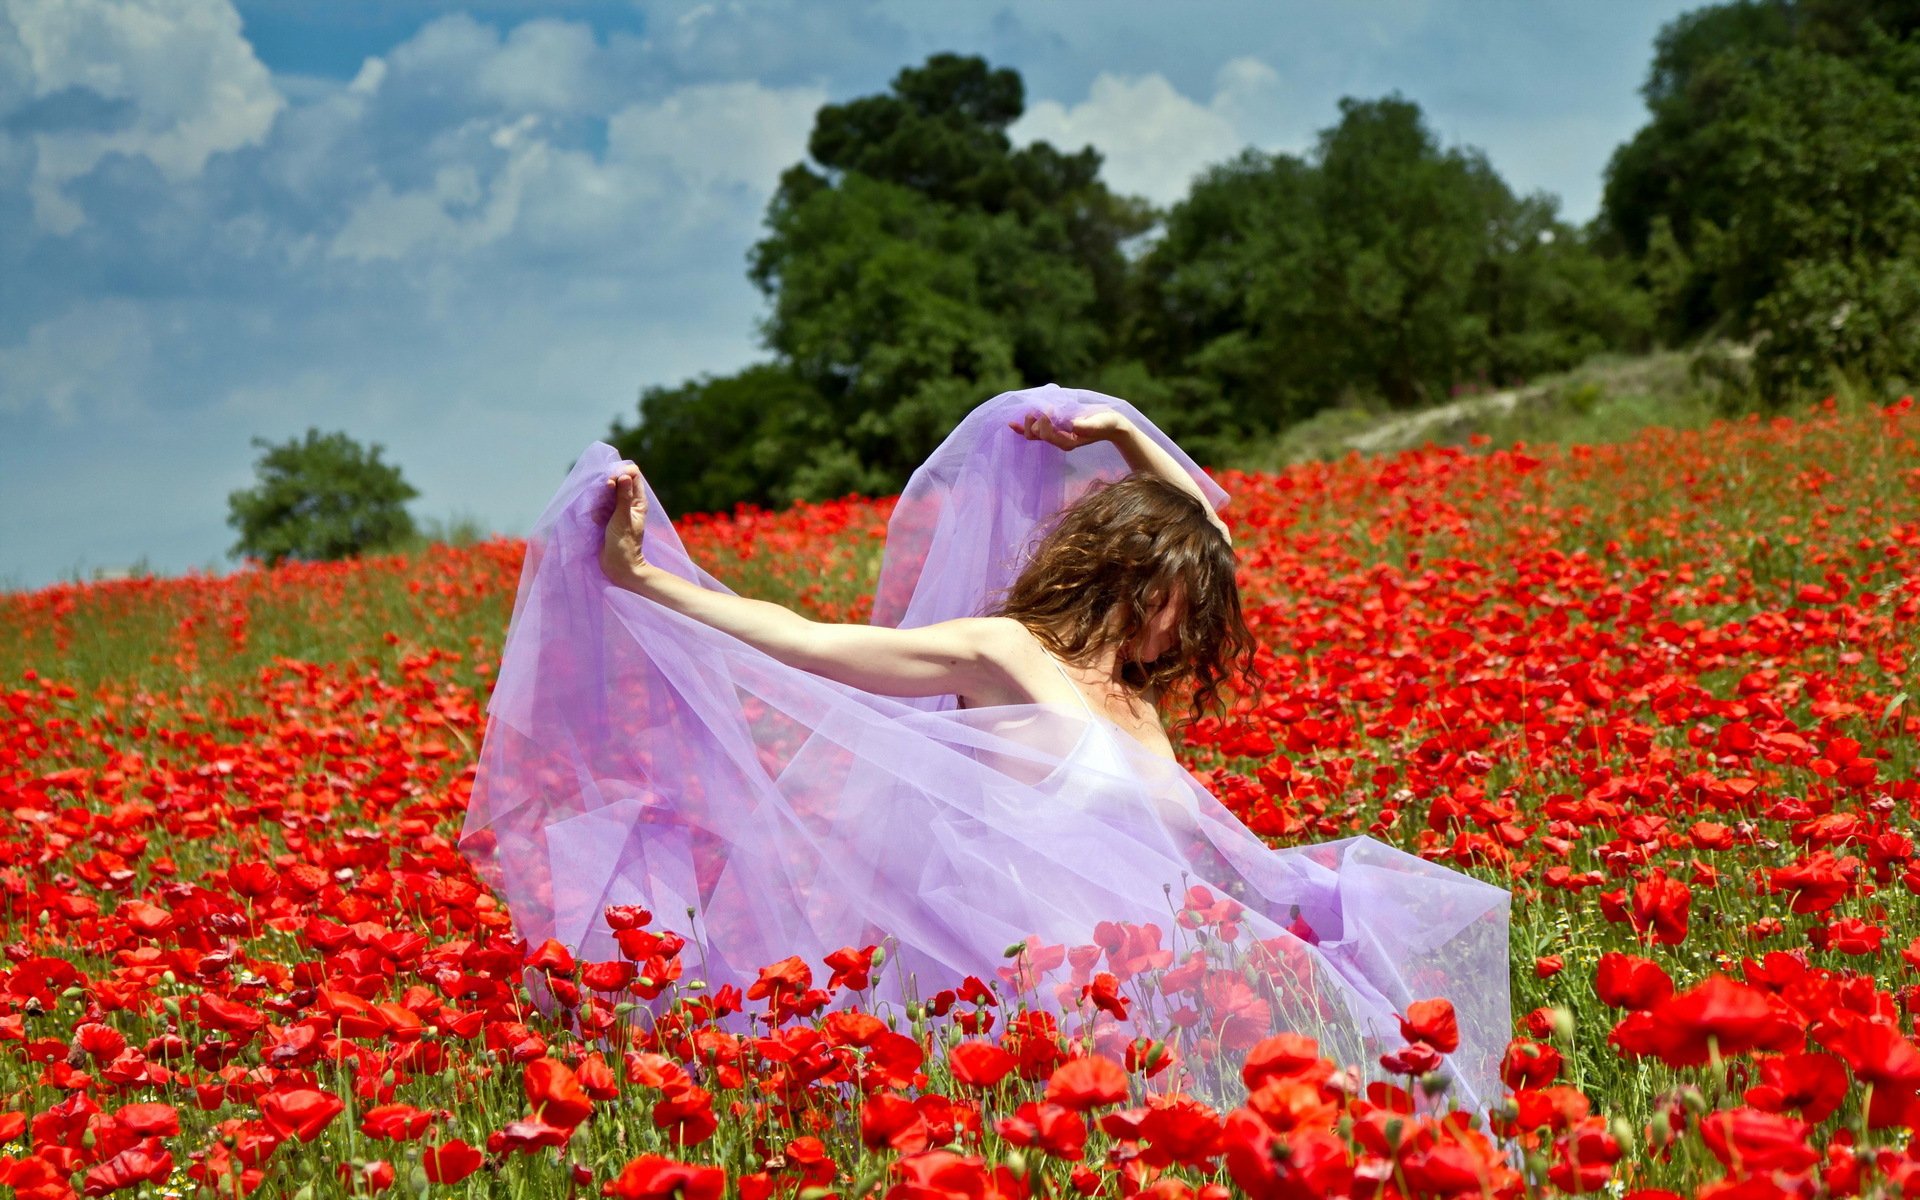 Очаровательная любовница любит светить большими буферами в поле цветов